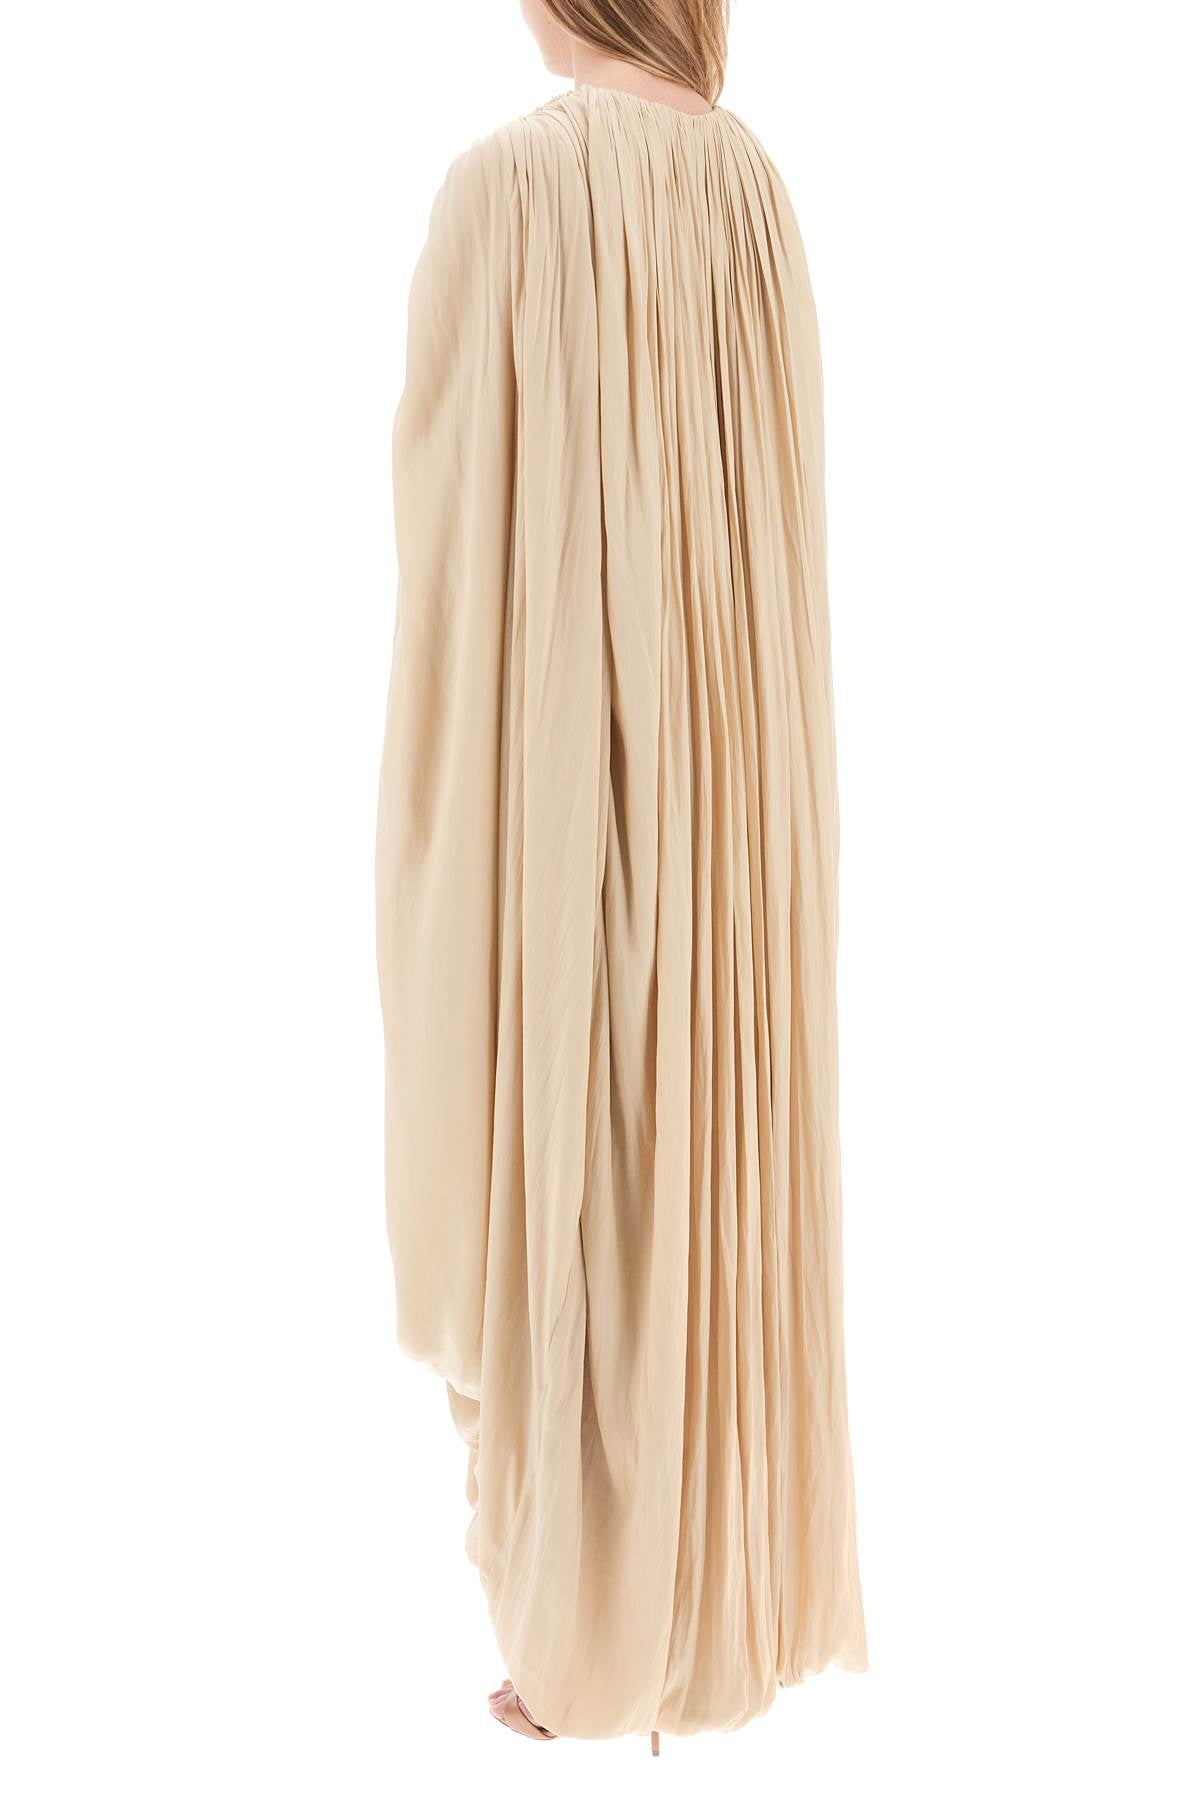 米色绉纱长裙 飘带式设计 气球袖